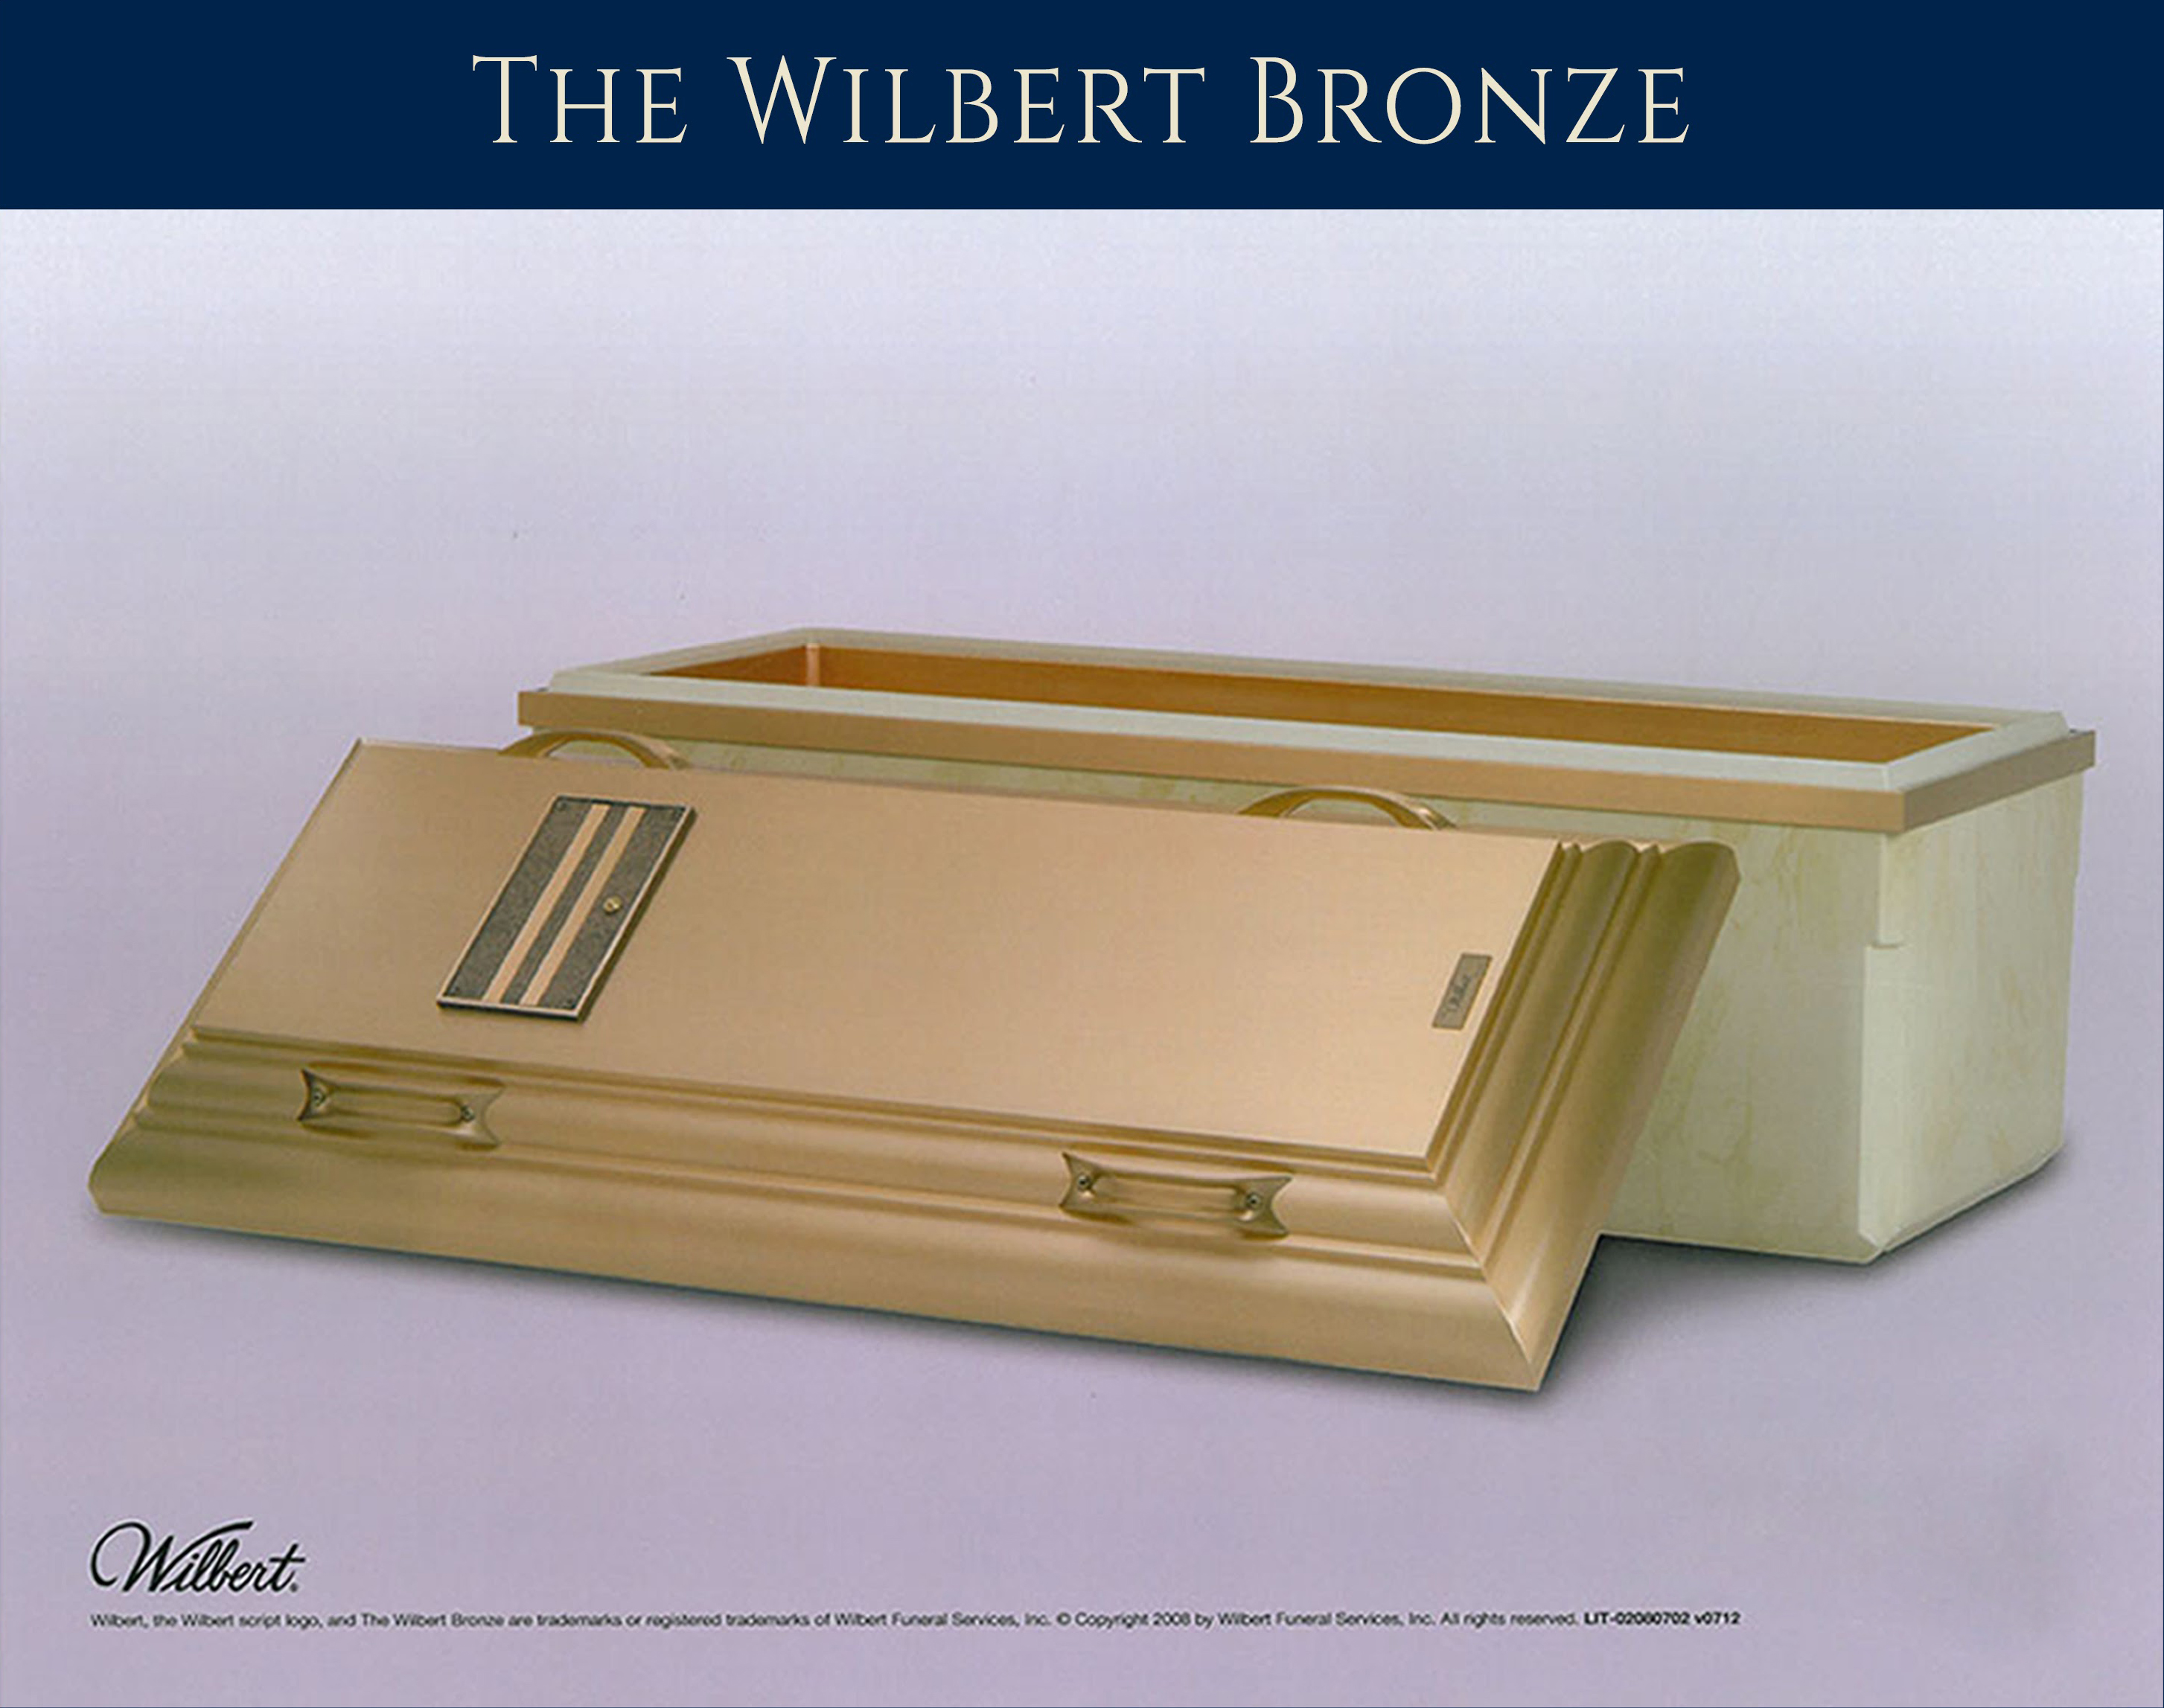 The Wilbert Bronze Vault